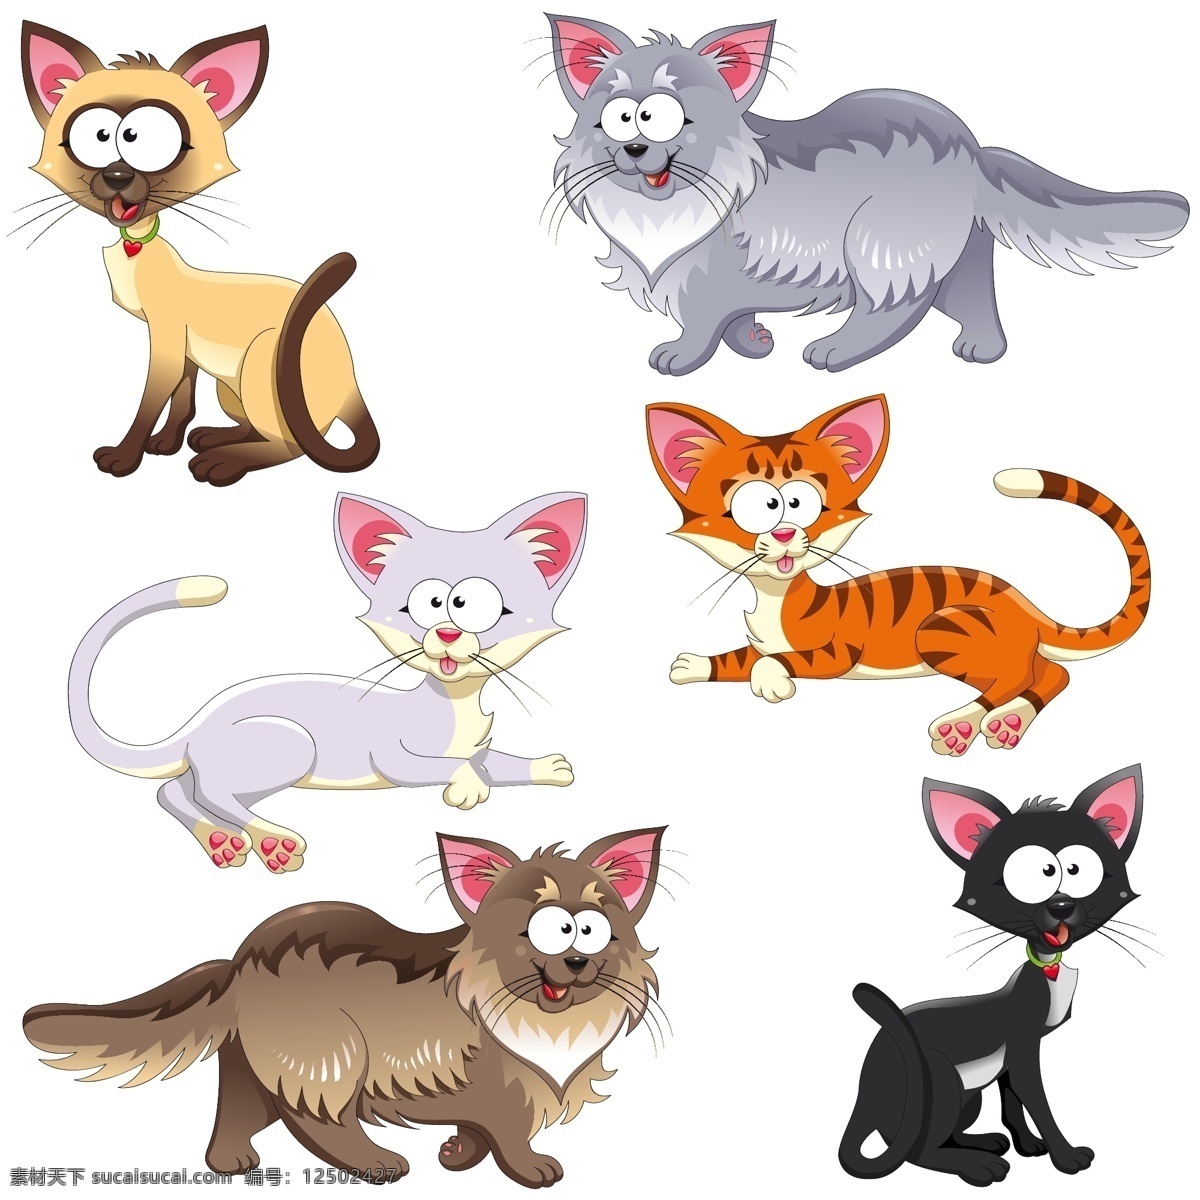 卡通漫画 猫 漫画猫 爬行猫 卡通猫 猫咪 可爱卡通猫咪 卡通 胖猫 动漫卡通插图 动漫动画